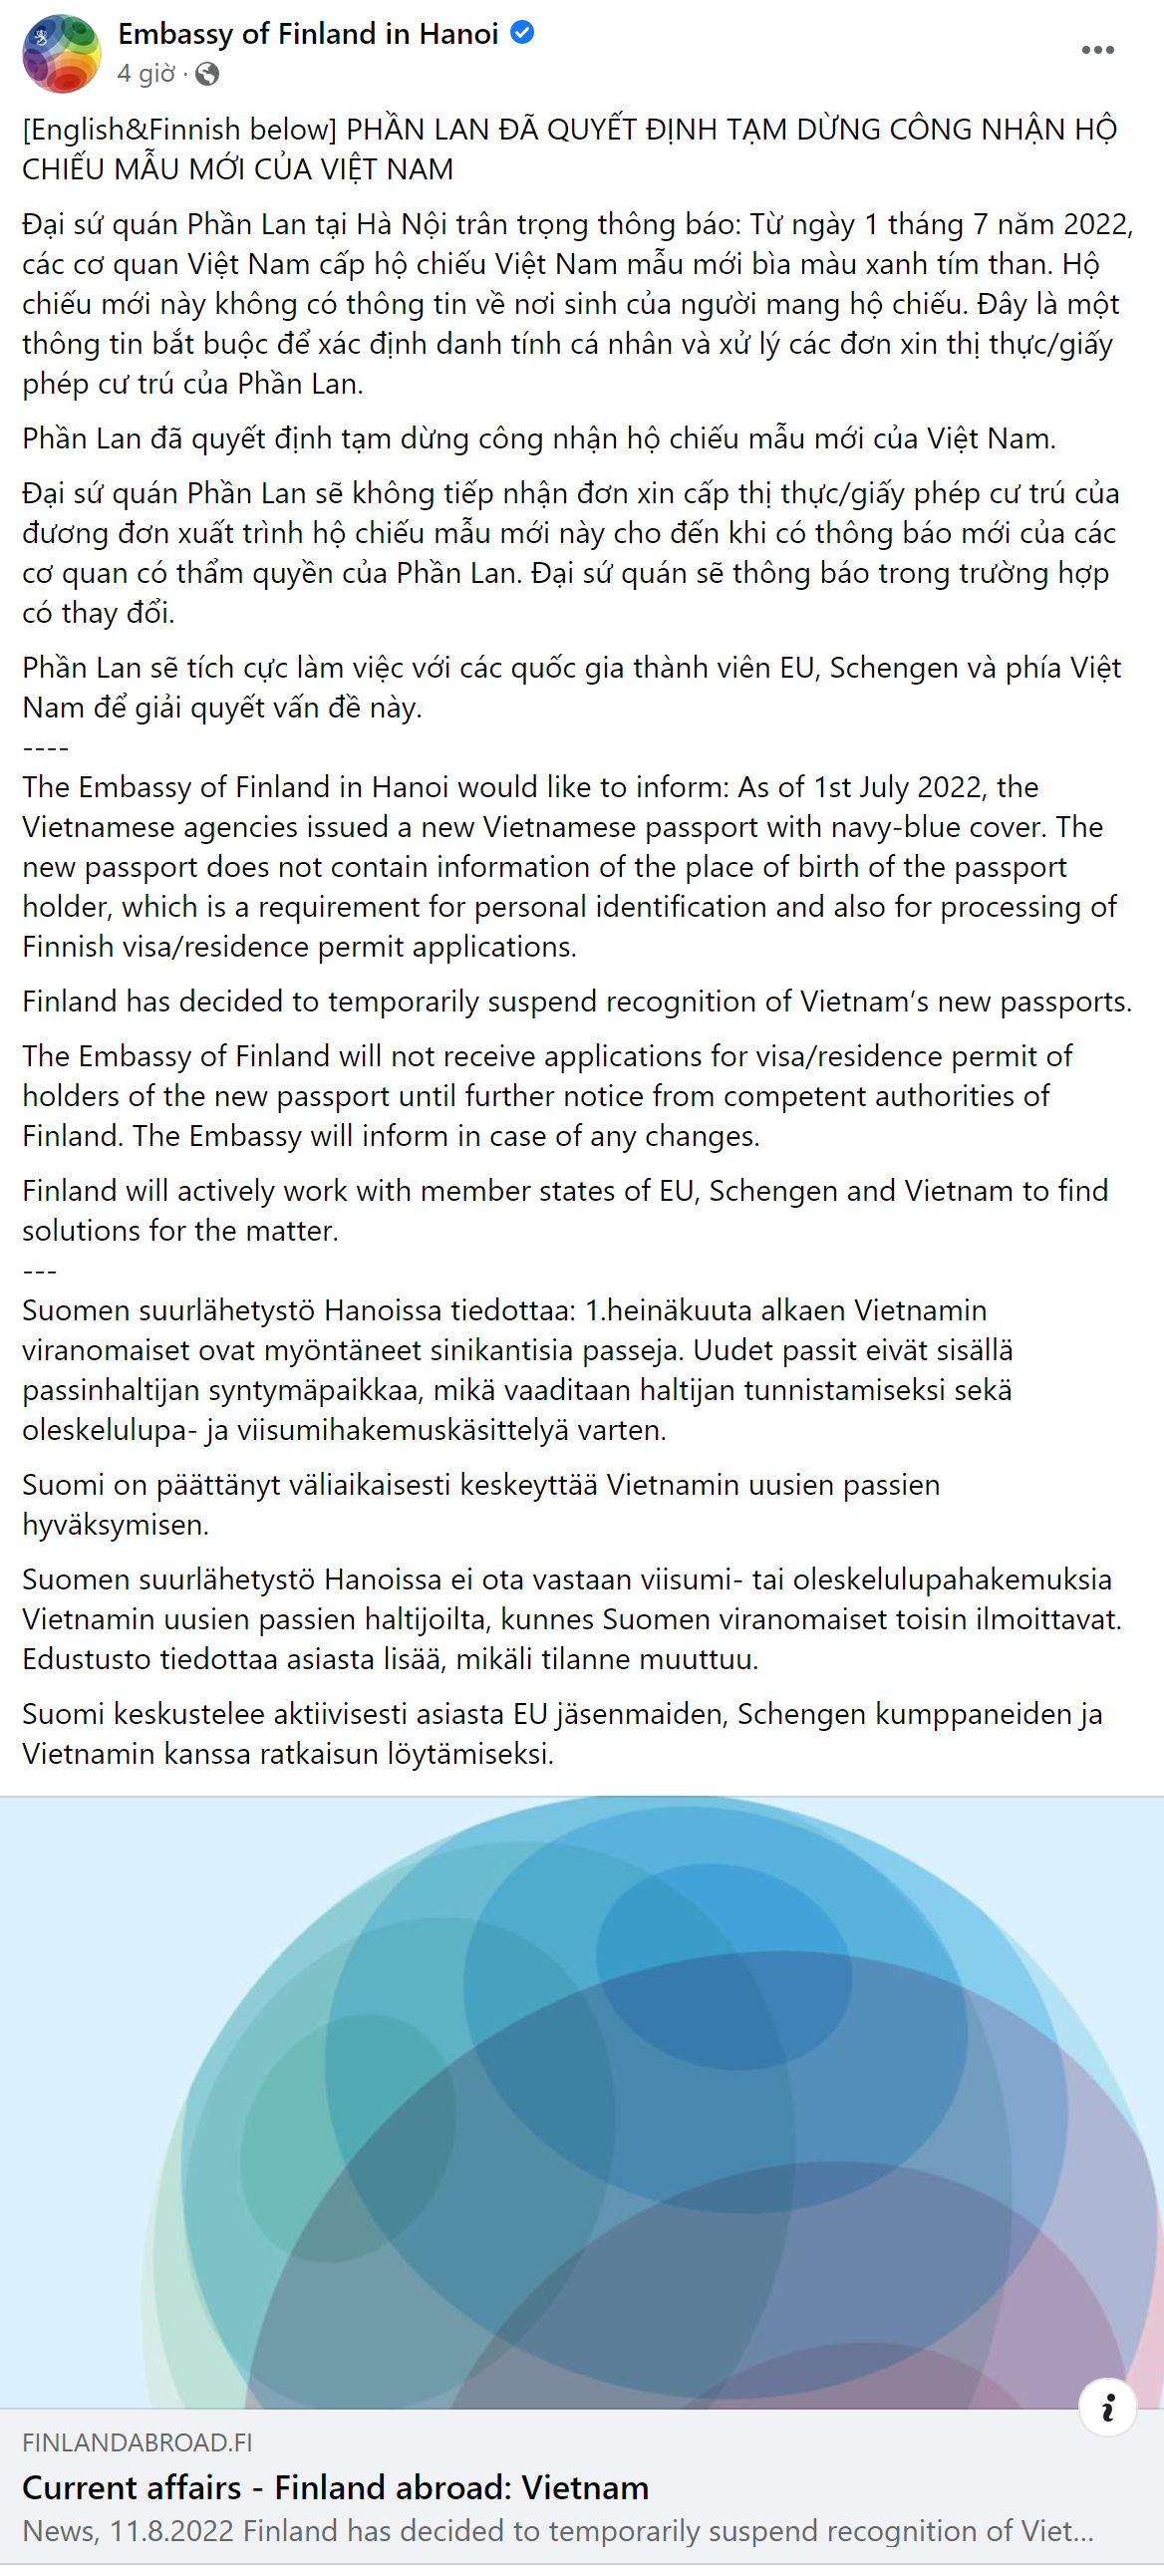 Phần Lan không chấp nhận hộ chiếu xanh tím than của Việt Nam